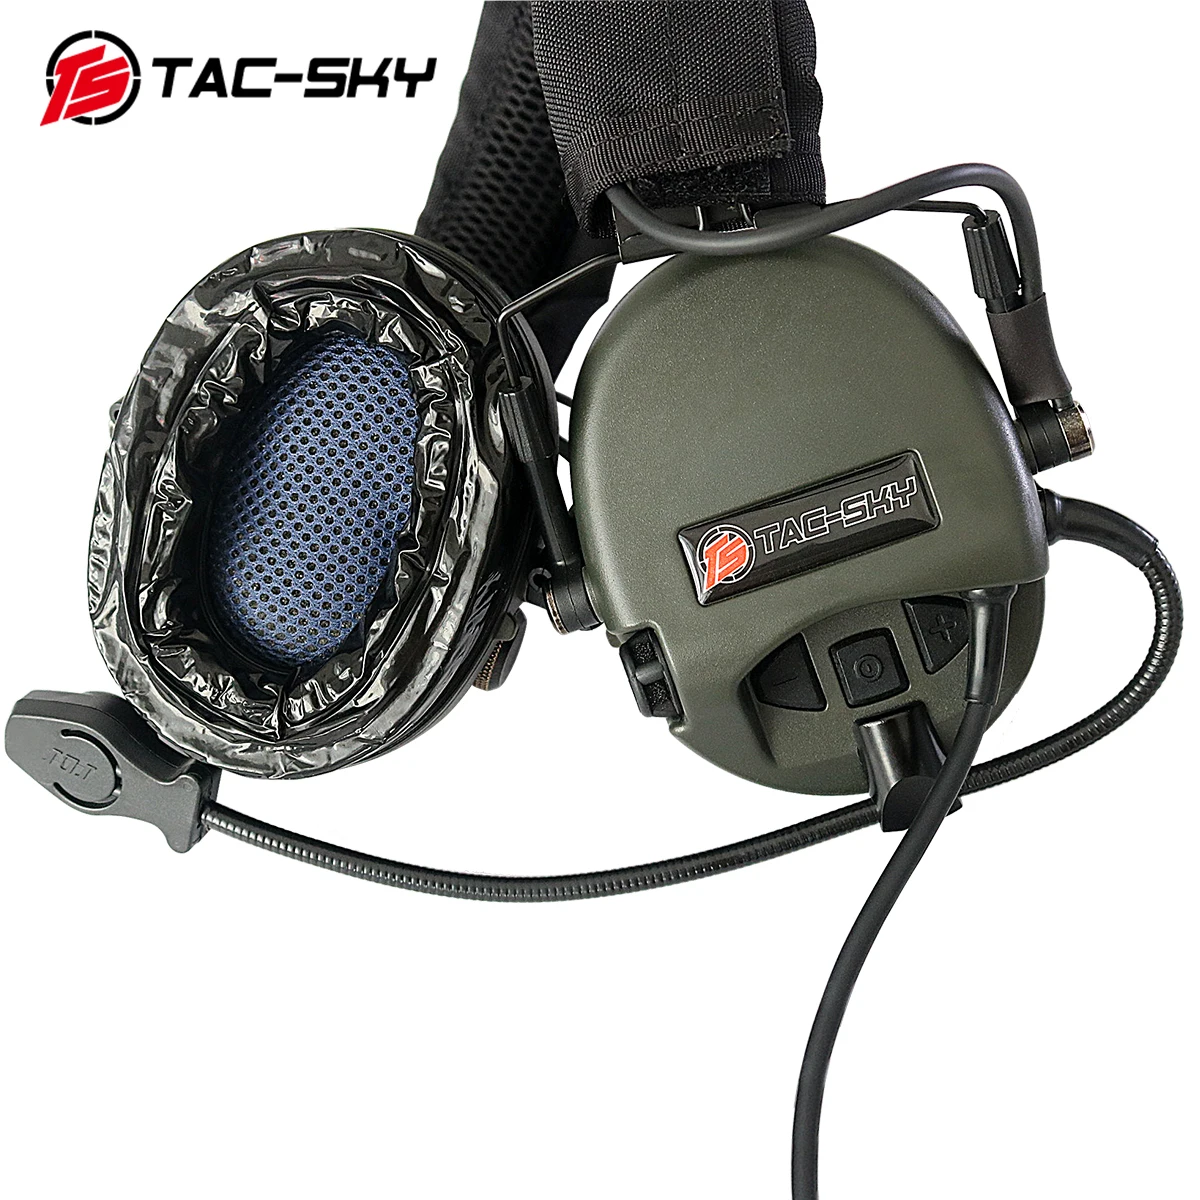 TAC-SKY TEA Hi-Threat Tier 1 силиконовые наушники охотничьи спортивные военные наушники с шумоподавлением тактическая гарнитура+ U94 PTT+ кронштейн для шлема